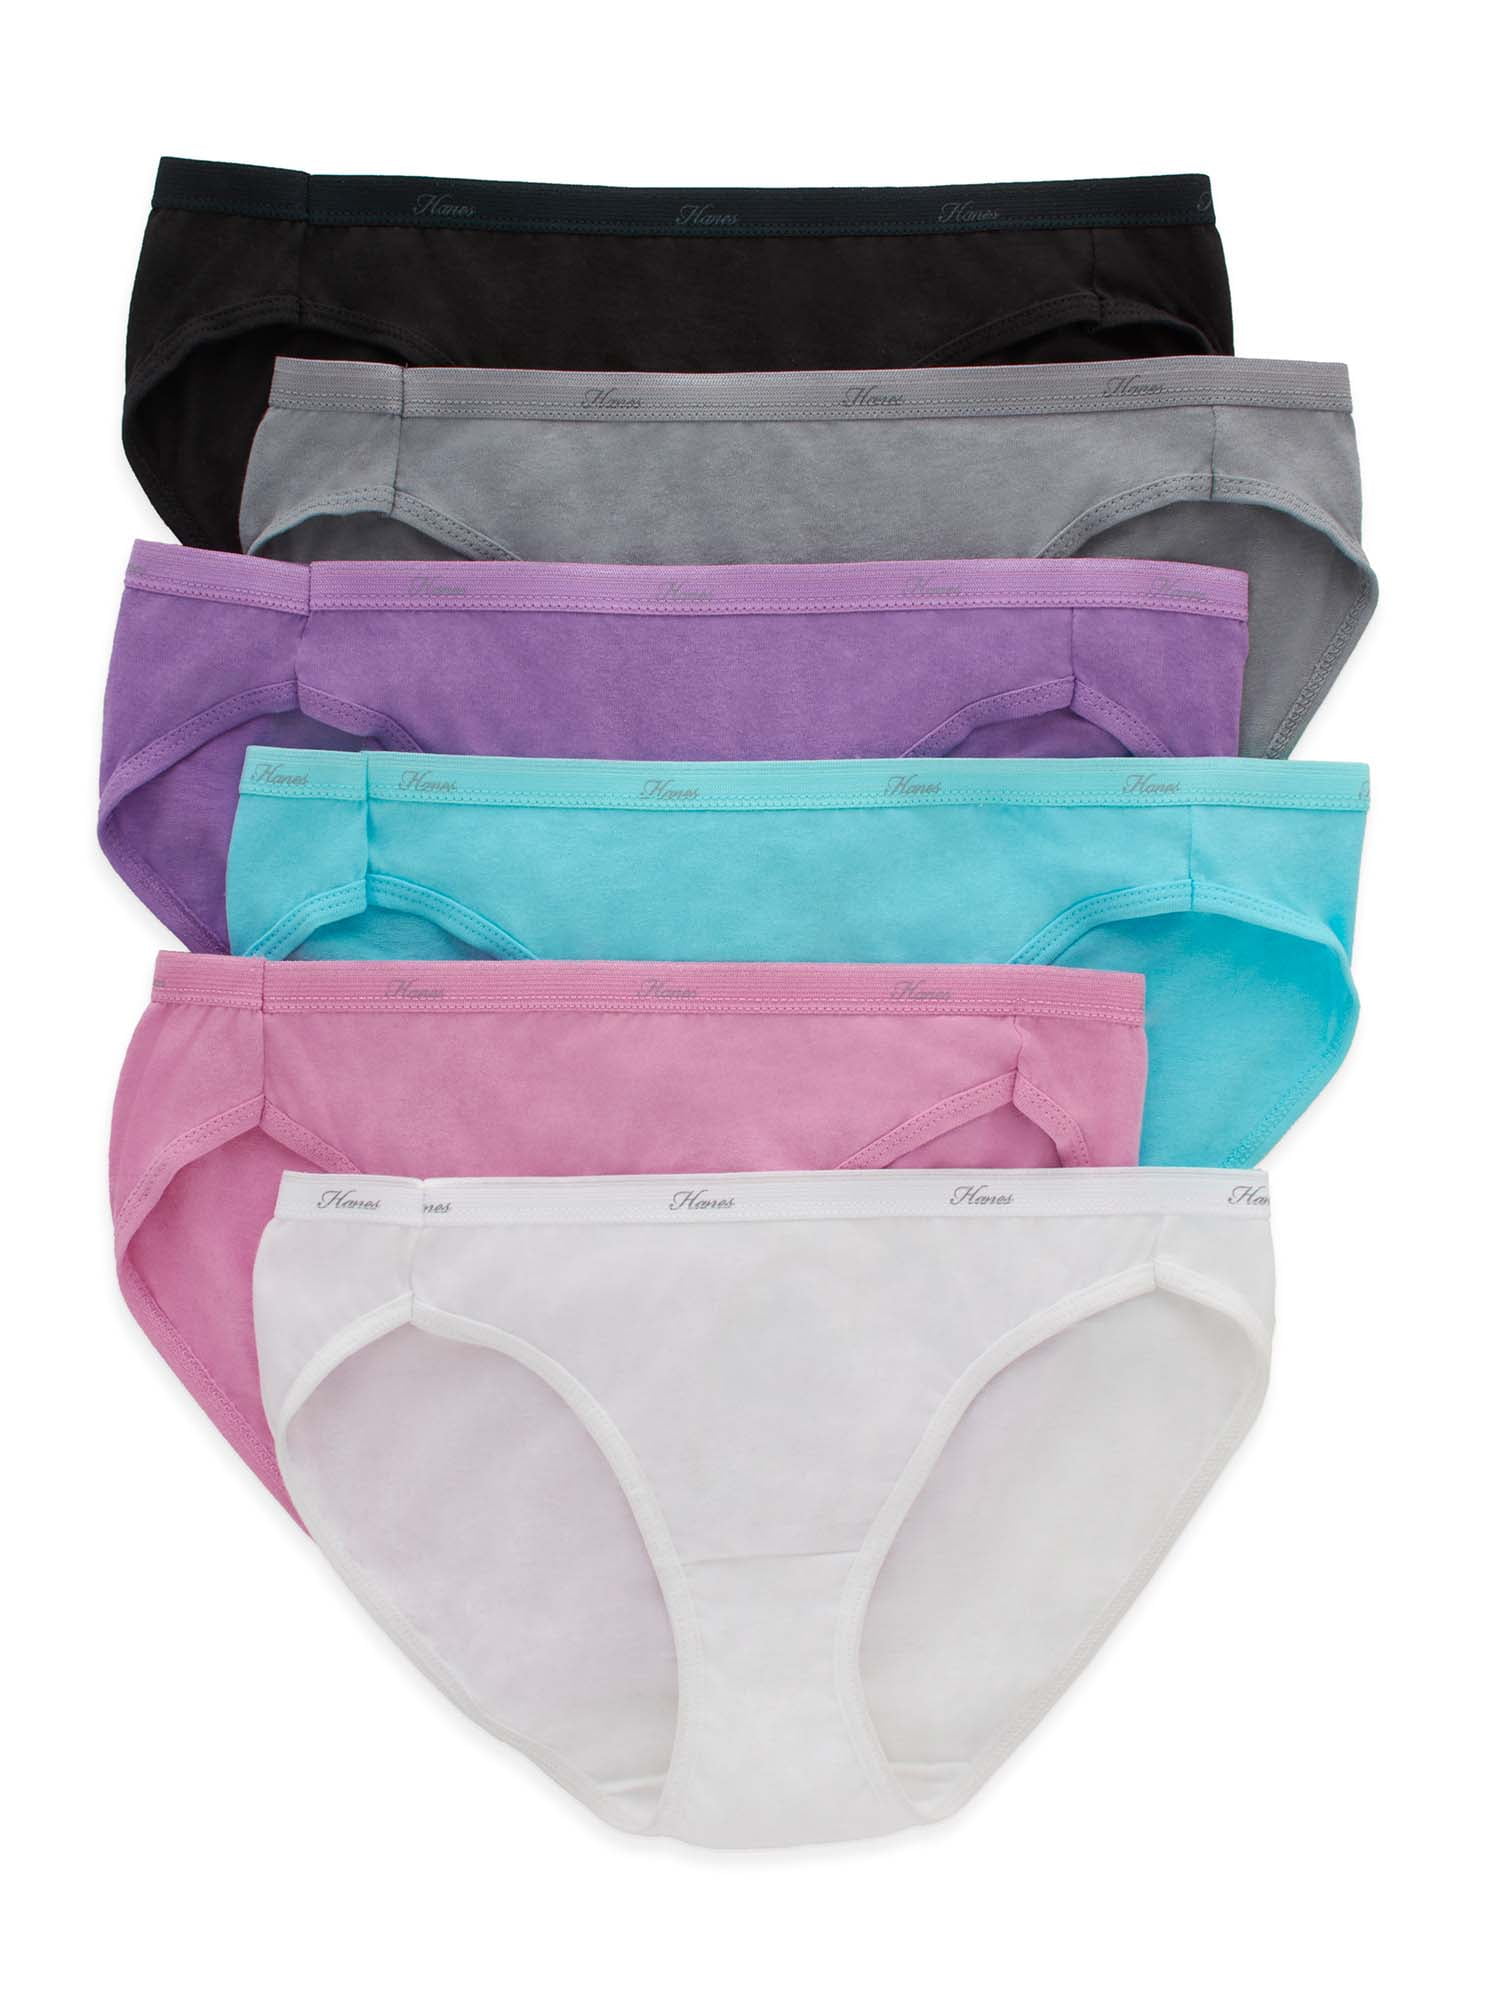 Hanes Womens Cotton Bikini Underwear, 6 Pack Philippines